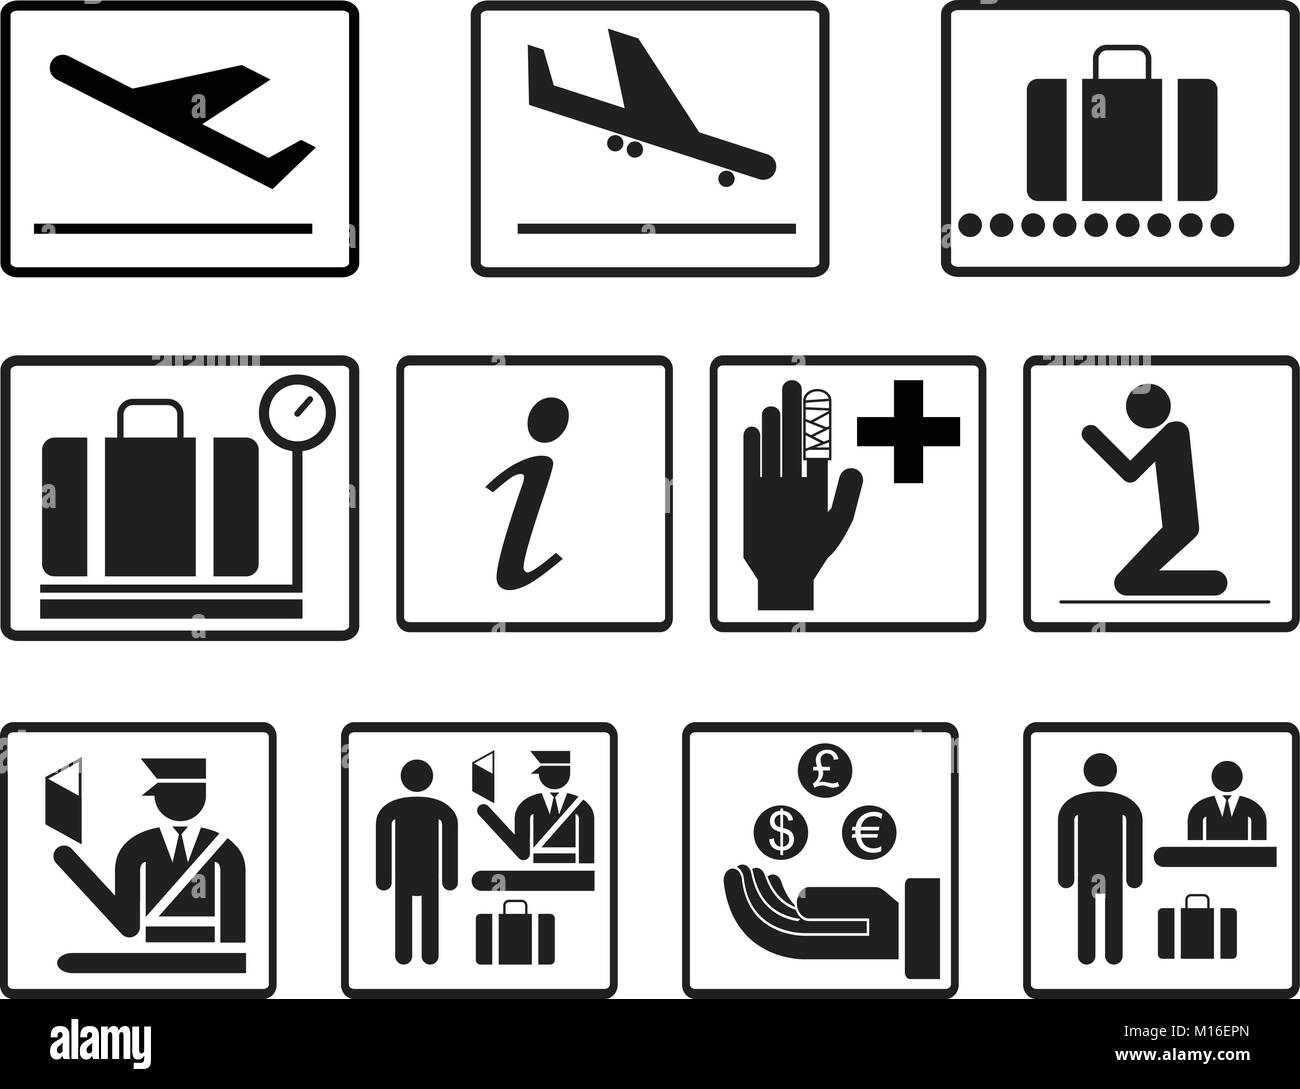 Aeroporto di semplice 2d icone set di vettore. Aeroporto di universale le icone da utilizzare per informazioni , compagnia aerea , partenza , arrivo volo , gate , Terminale , bag Illustrazione Vettoriale